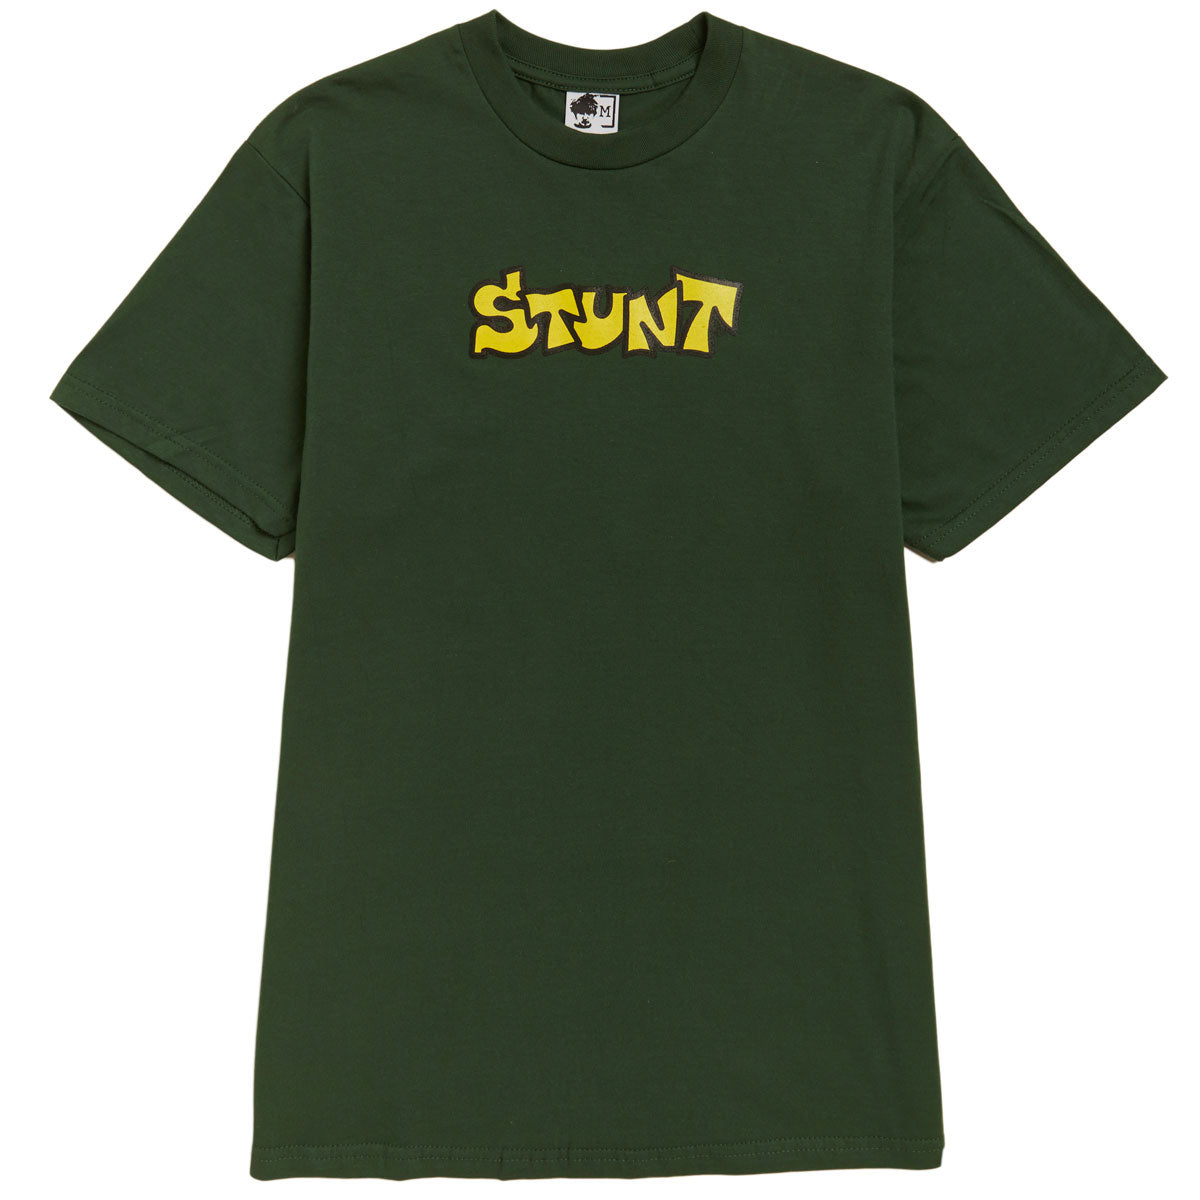 Stunt OG Stunt T-Shirt - Green image 1